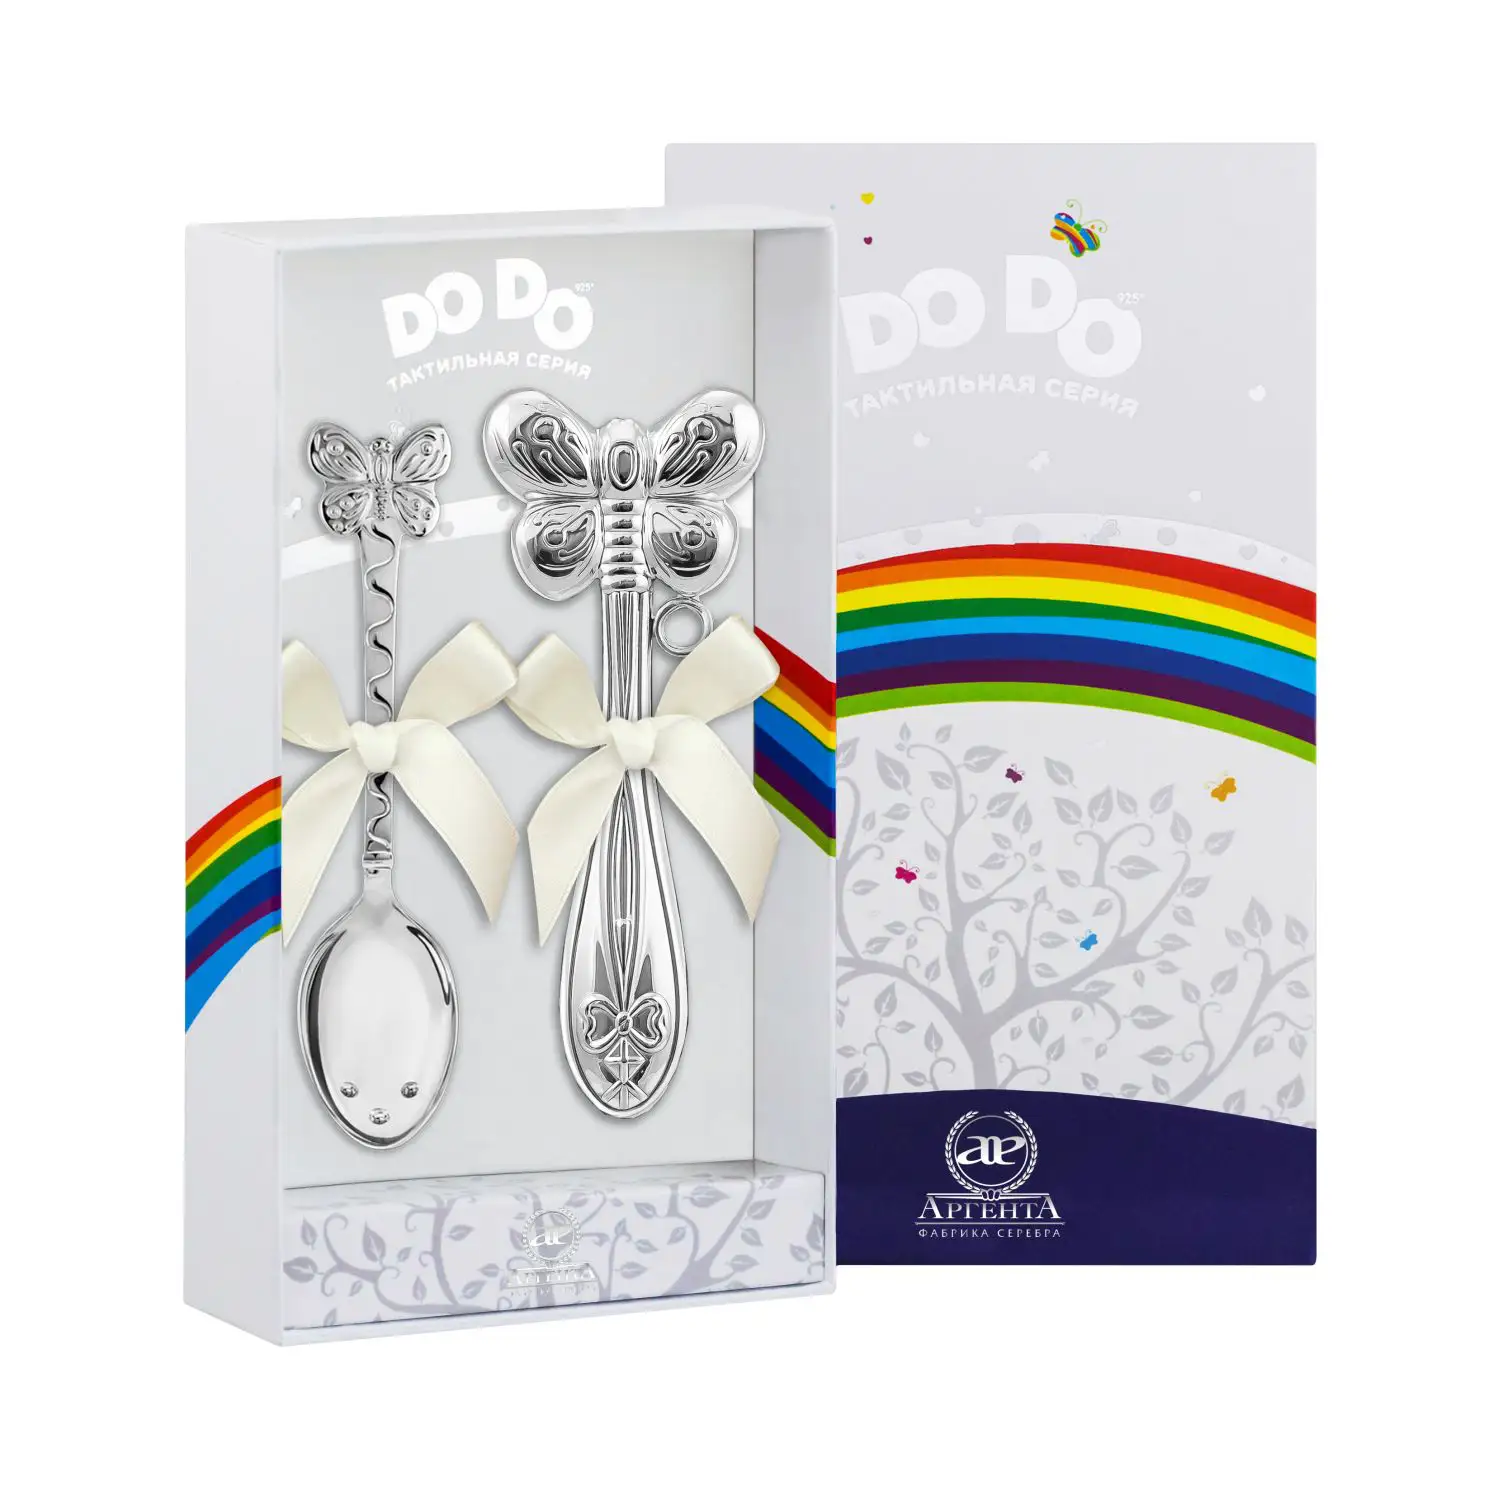 Набор для малышей DODO Бабочка: ложка и погремушка (Серебро 925) набор для малышей dodo машинка ложка и погремушка серебро 925